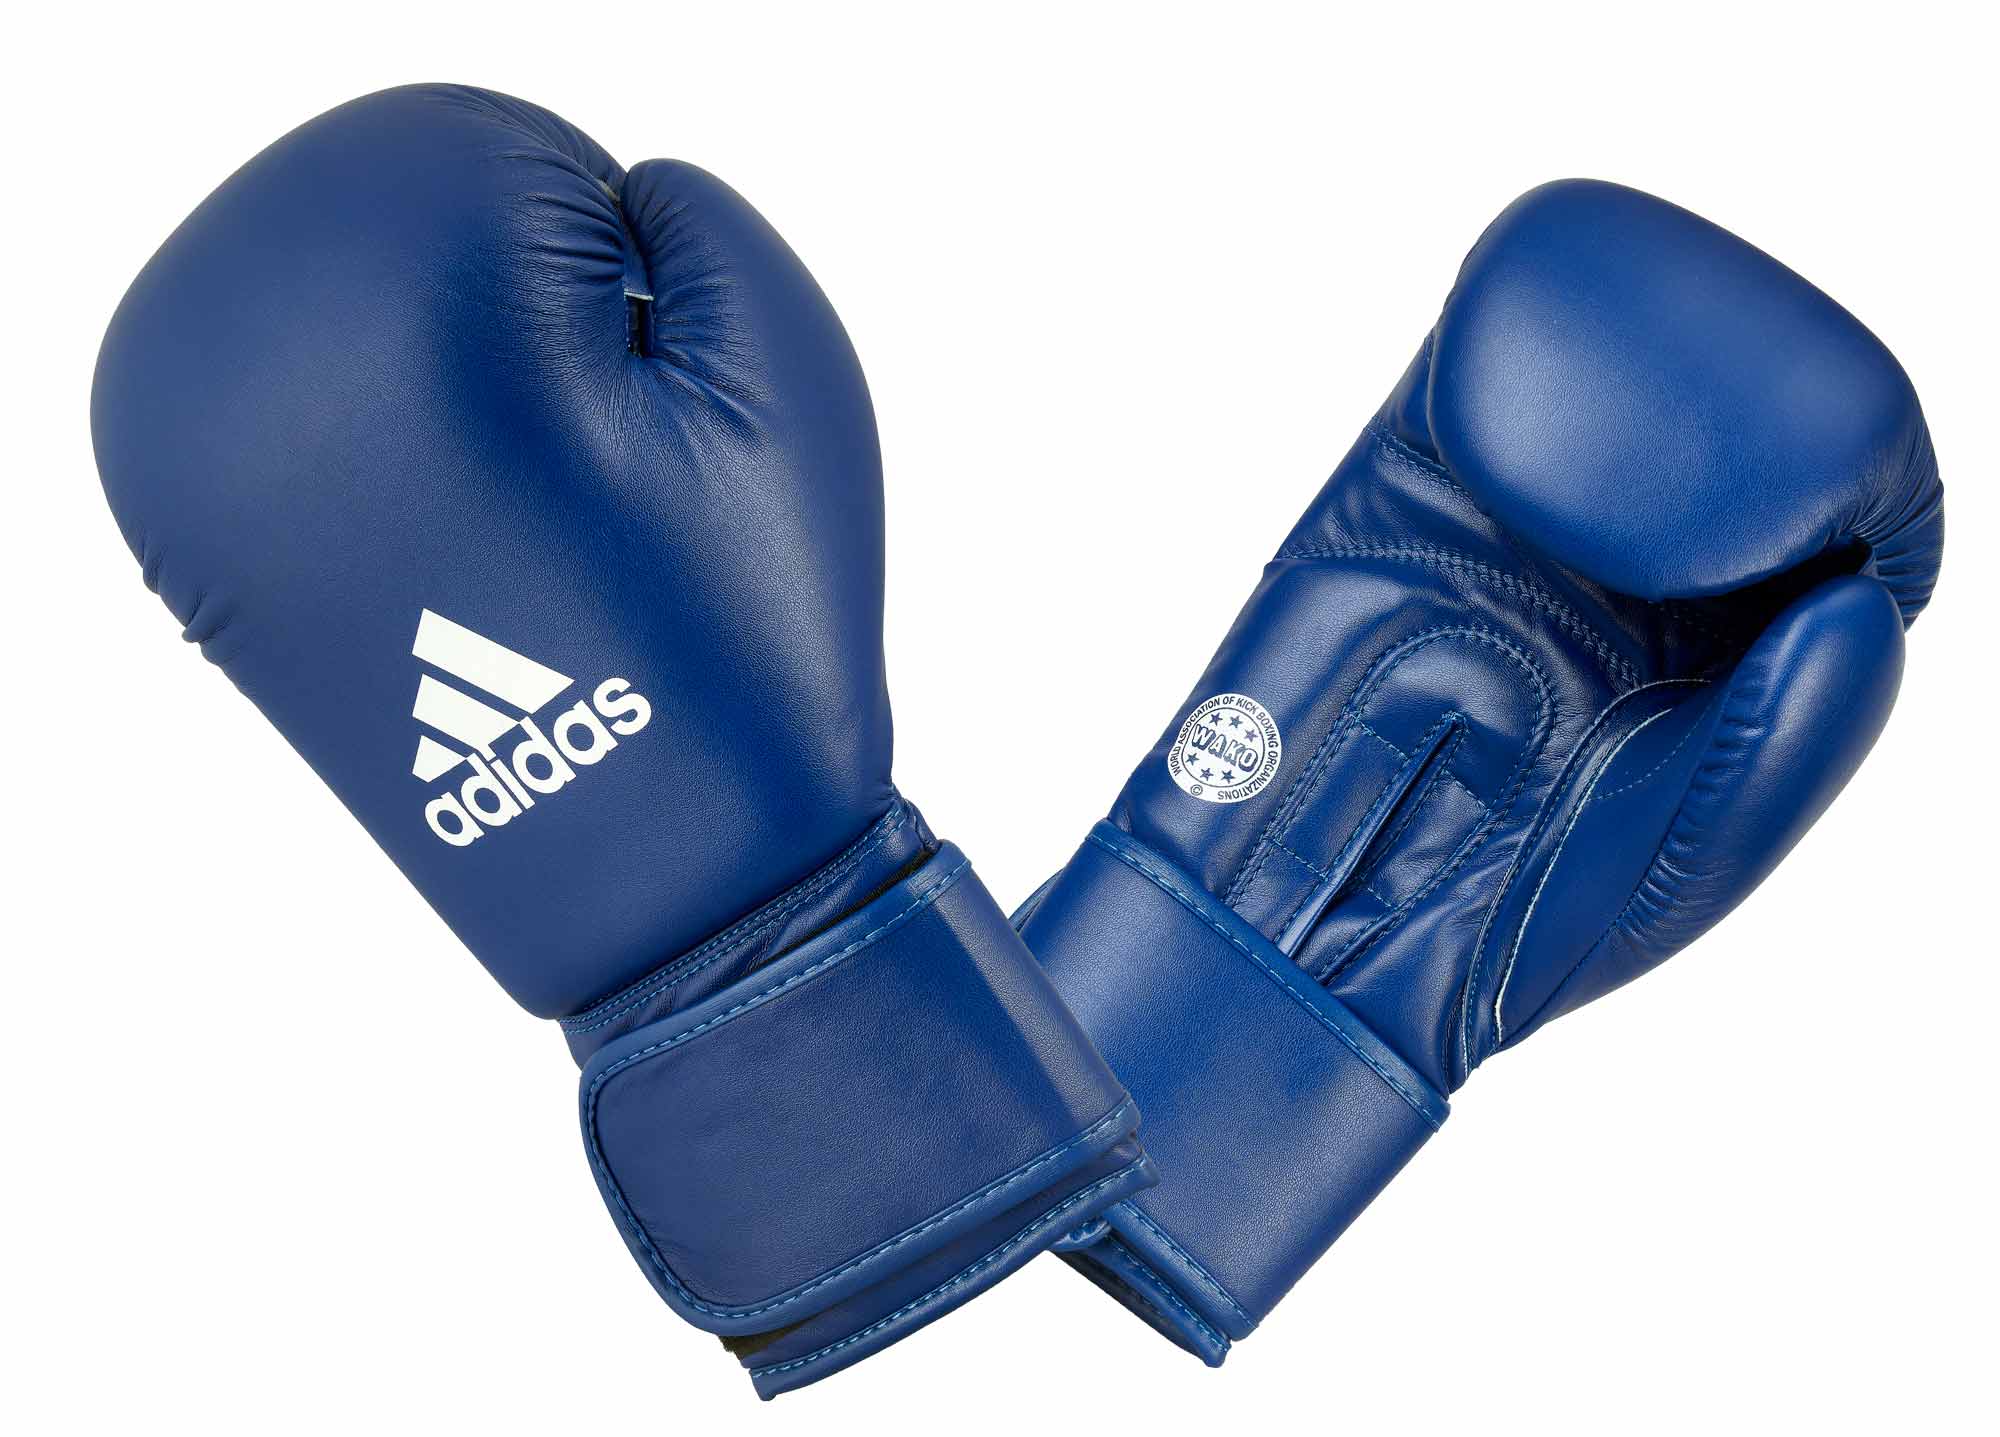 ADIDAS WAKO Boxhandschuhe Training Kickboxen Blau 10oz. | Kickbox  Handschuhe | Boxhandschuhe | Ausrüstung